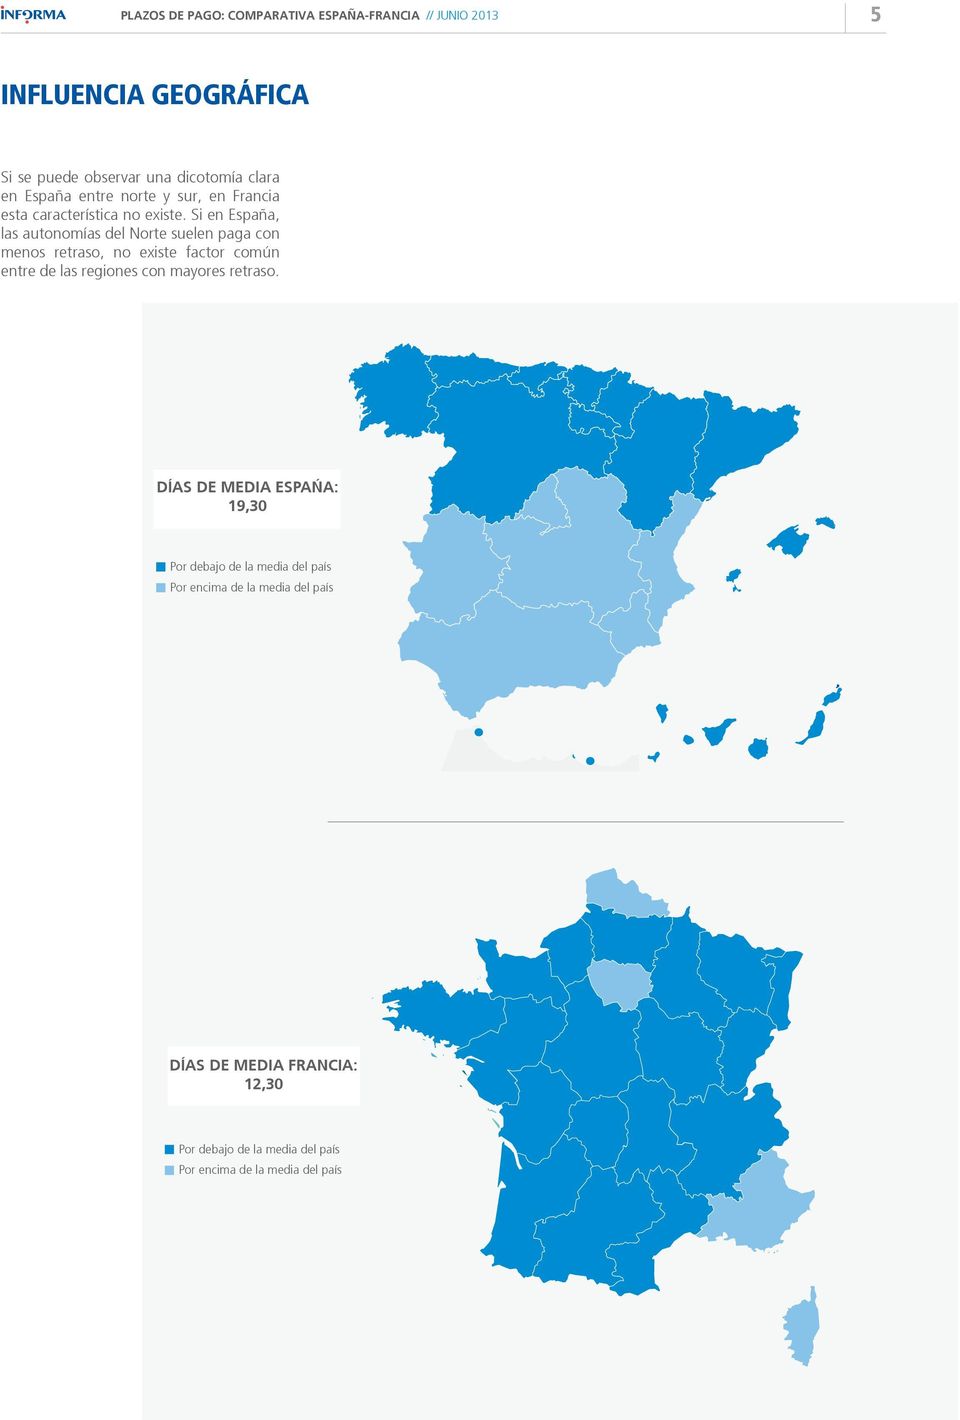 Si en España, las autonomías del Norte suelen paga con menos retraso, no existe factor común entre de las